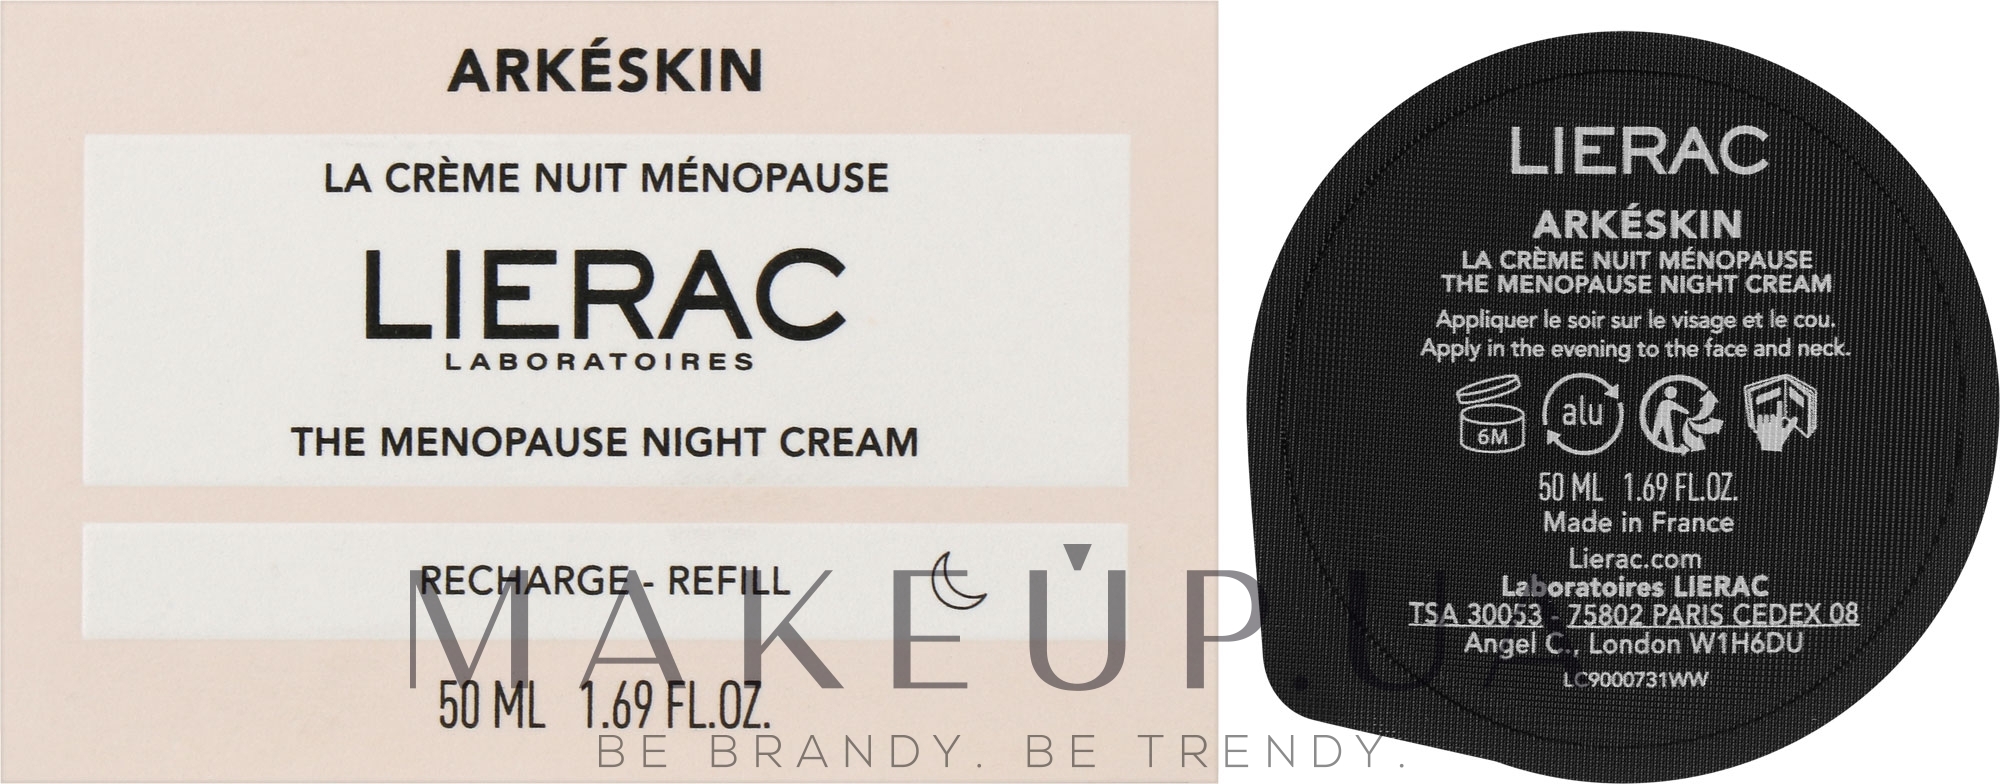 Нічний крем для обличчя - Lierac Arkeskin The Menopause Night Cream Refill (змінний блок) — фото 50ml